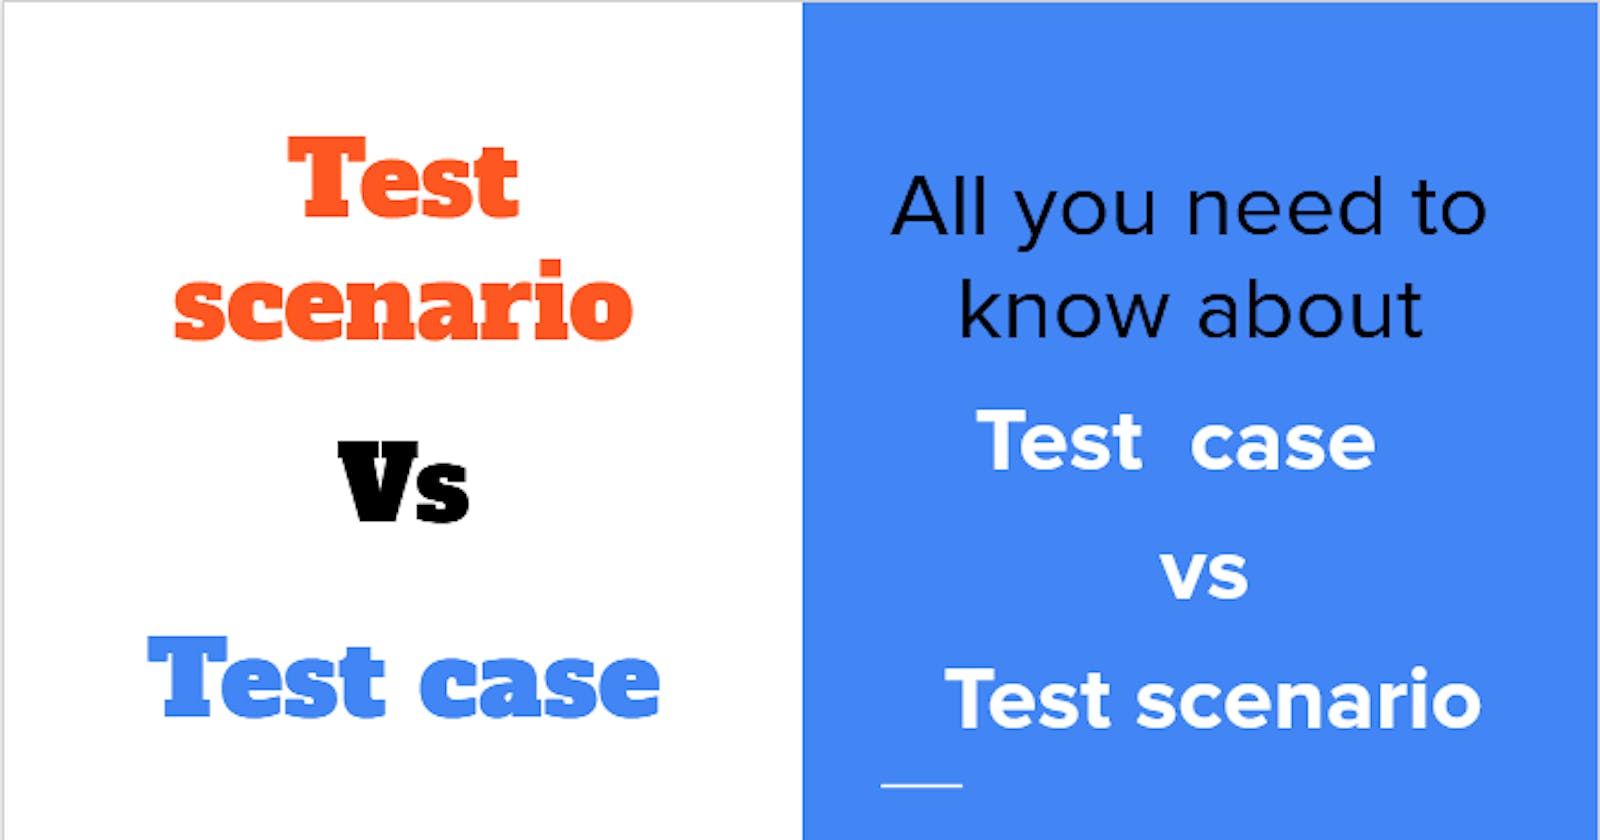 Test case and Test scenario